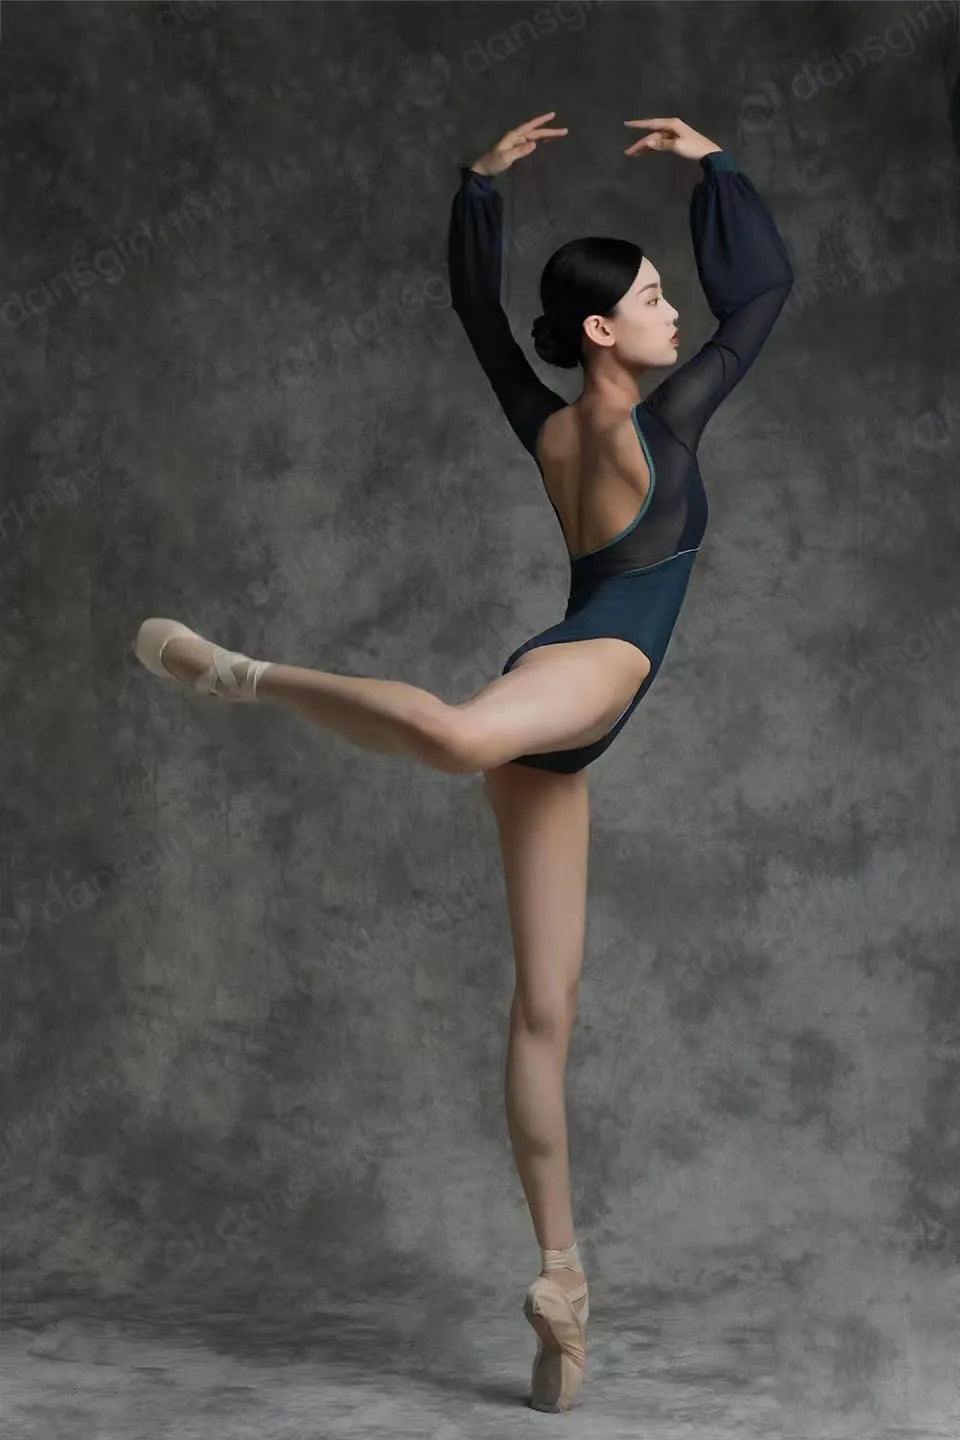 bailarina de ballet vistiendo un leotardo negro haciendo una pose arabesca